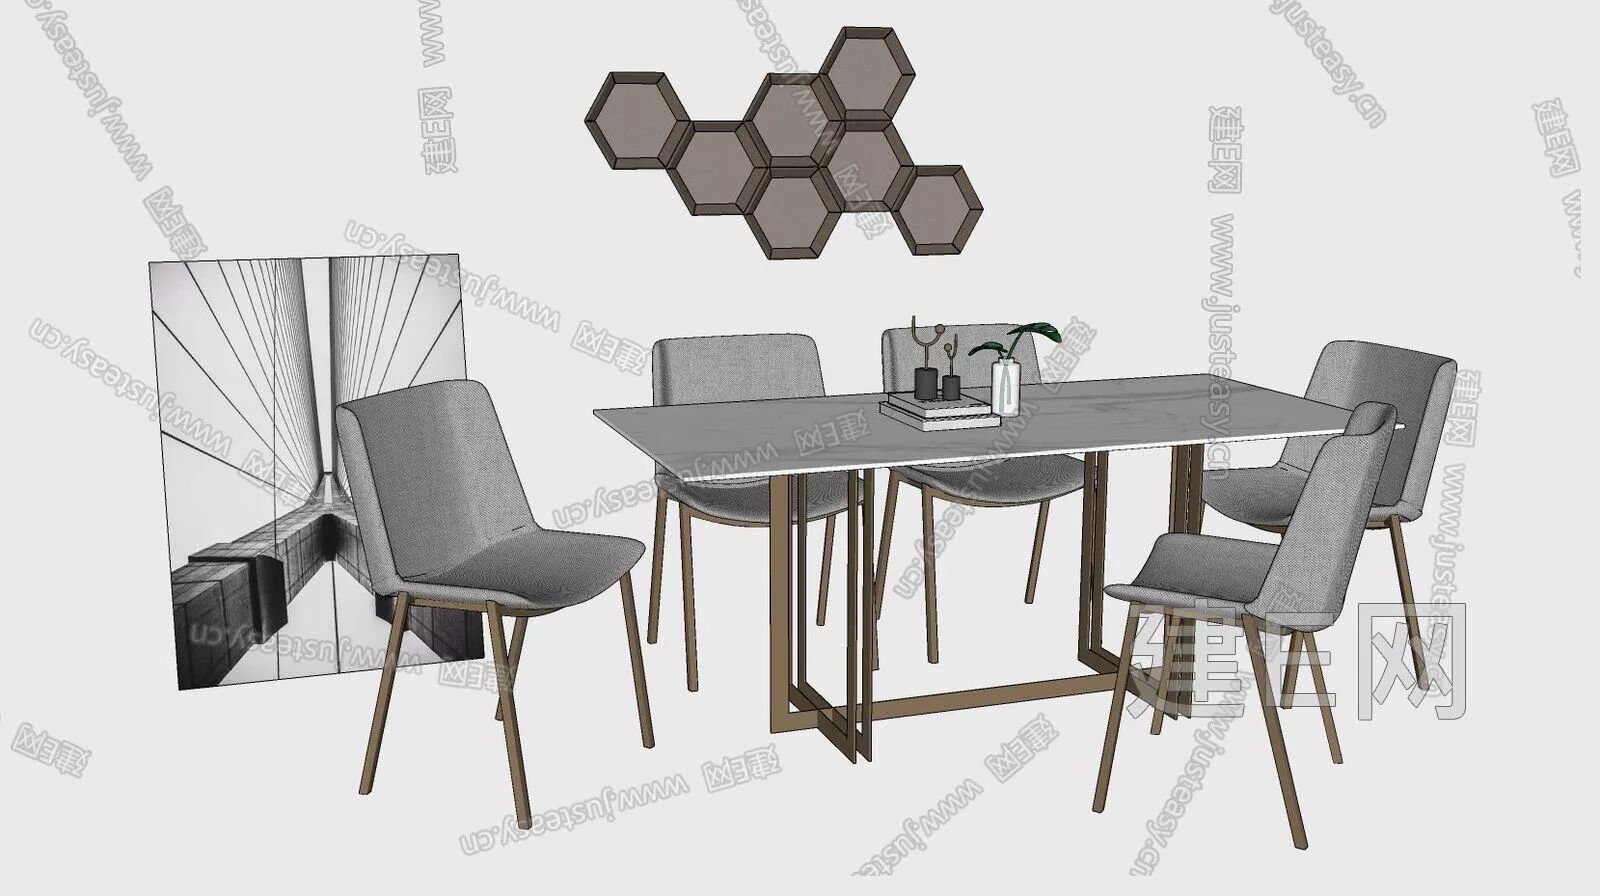 MODERN DINING TABLE SET - SKETCHUP 3D MODEL - ENSCAPE - 106709243